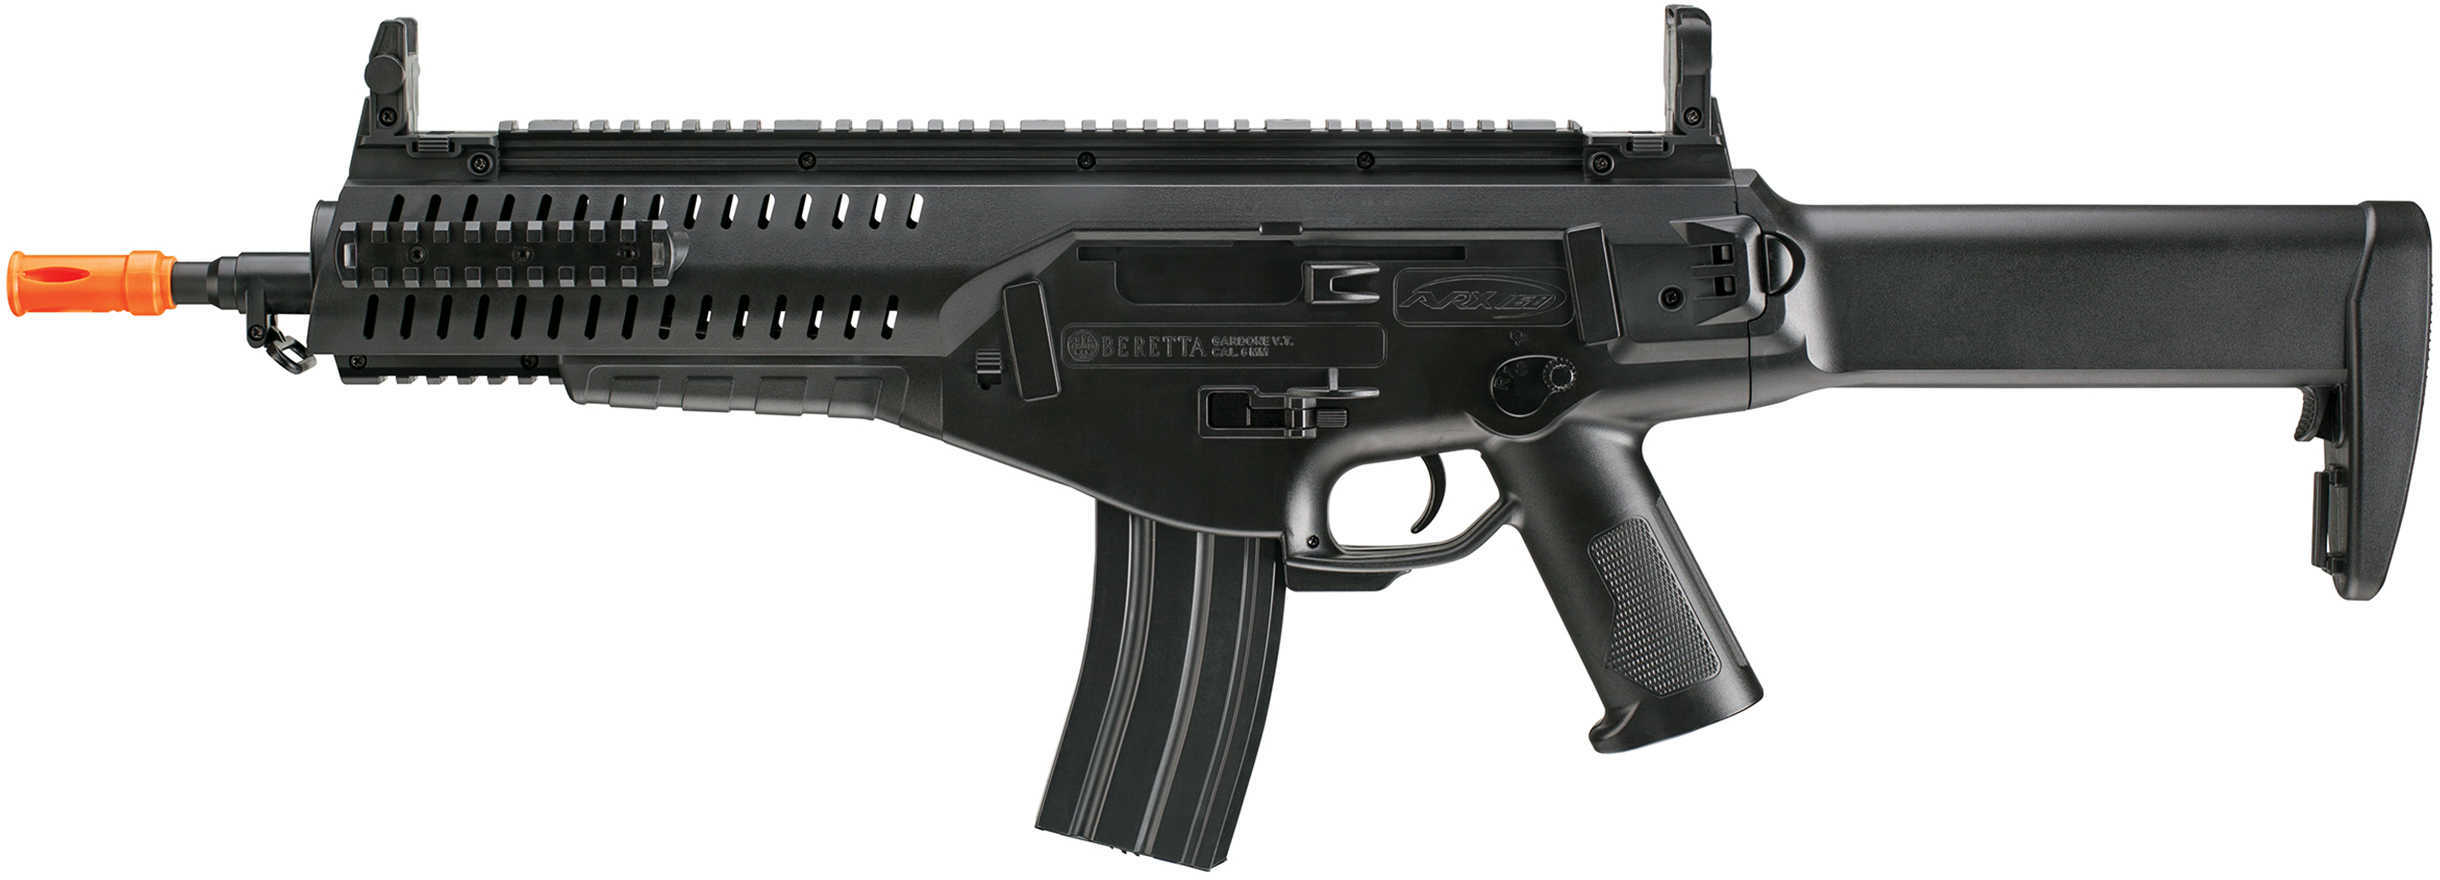 Umarex USA Beretta ARX160 Advanced Md: 2274009